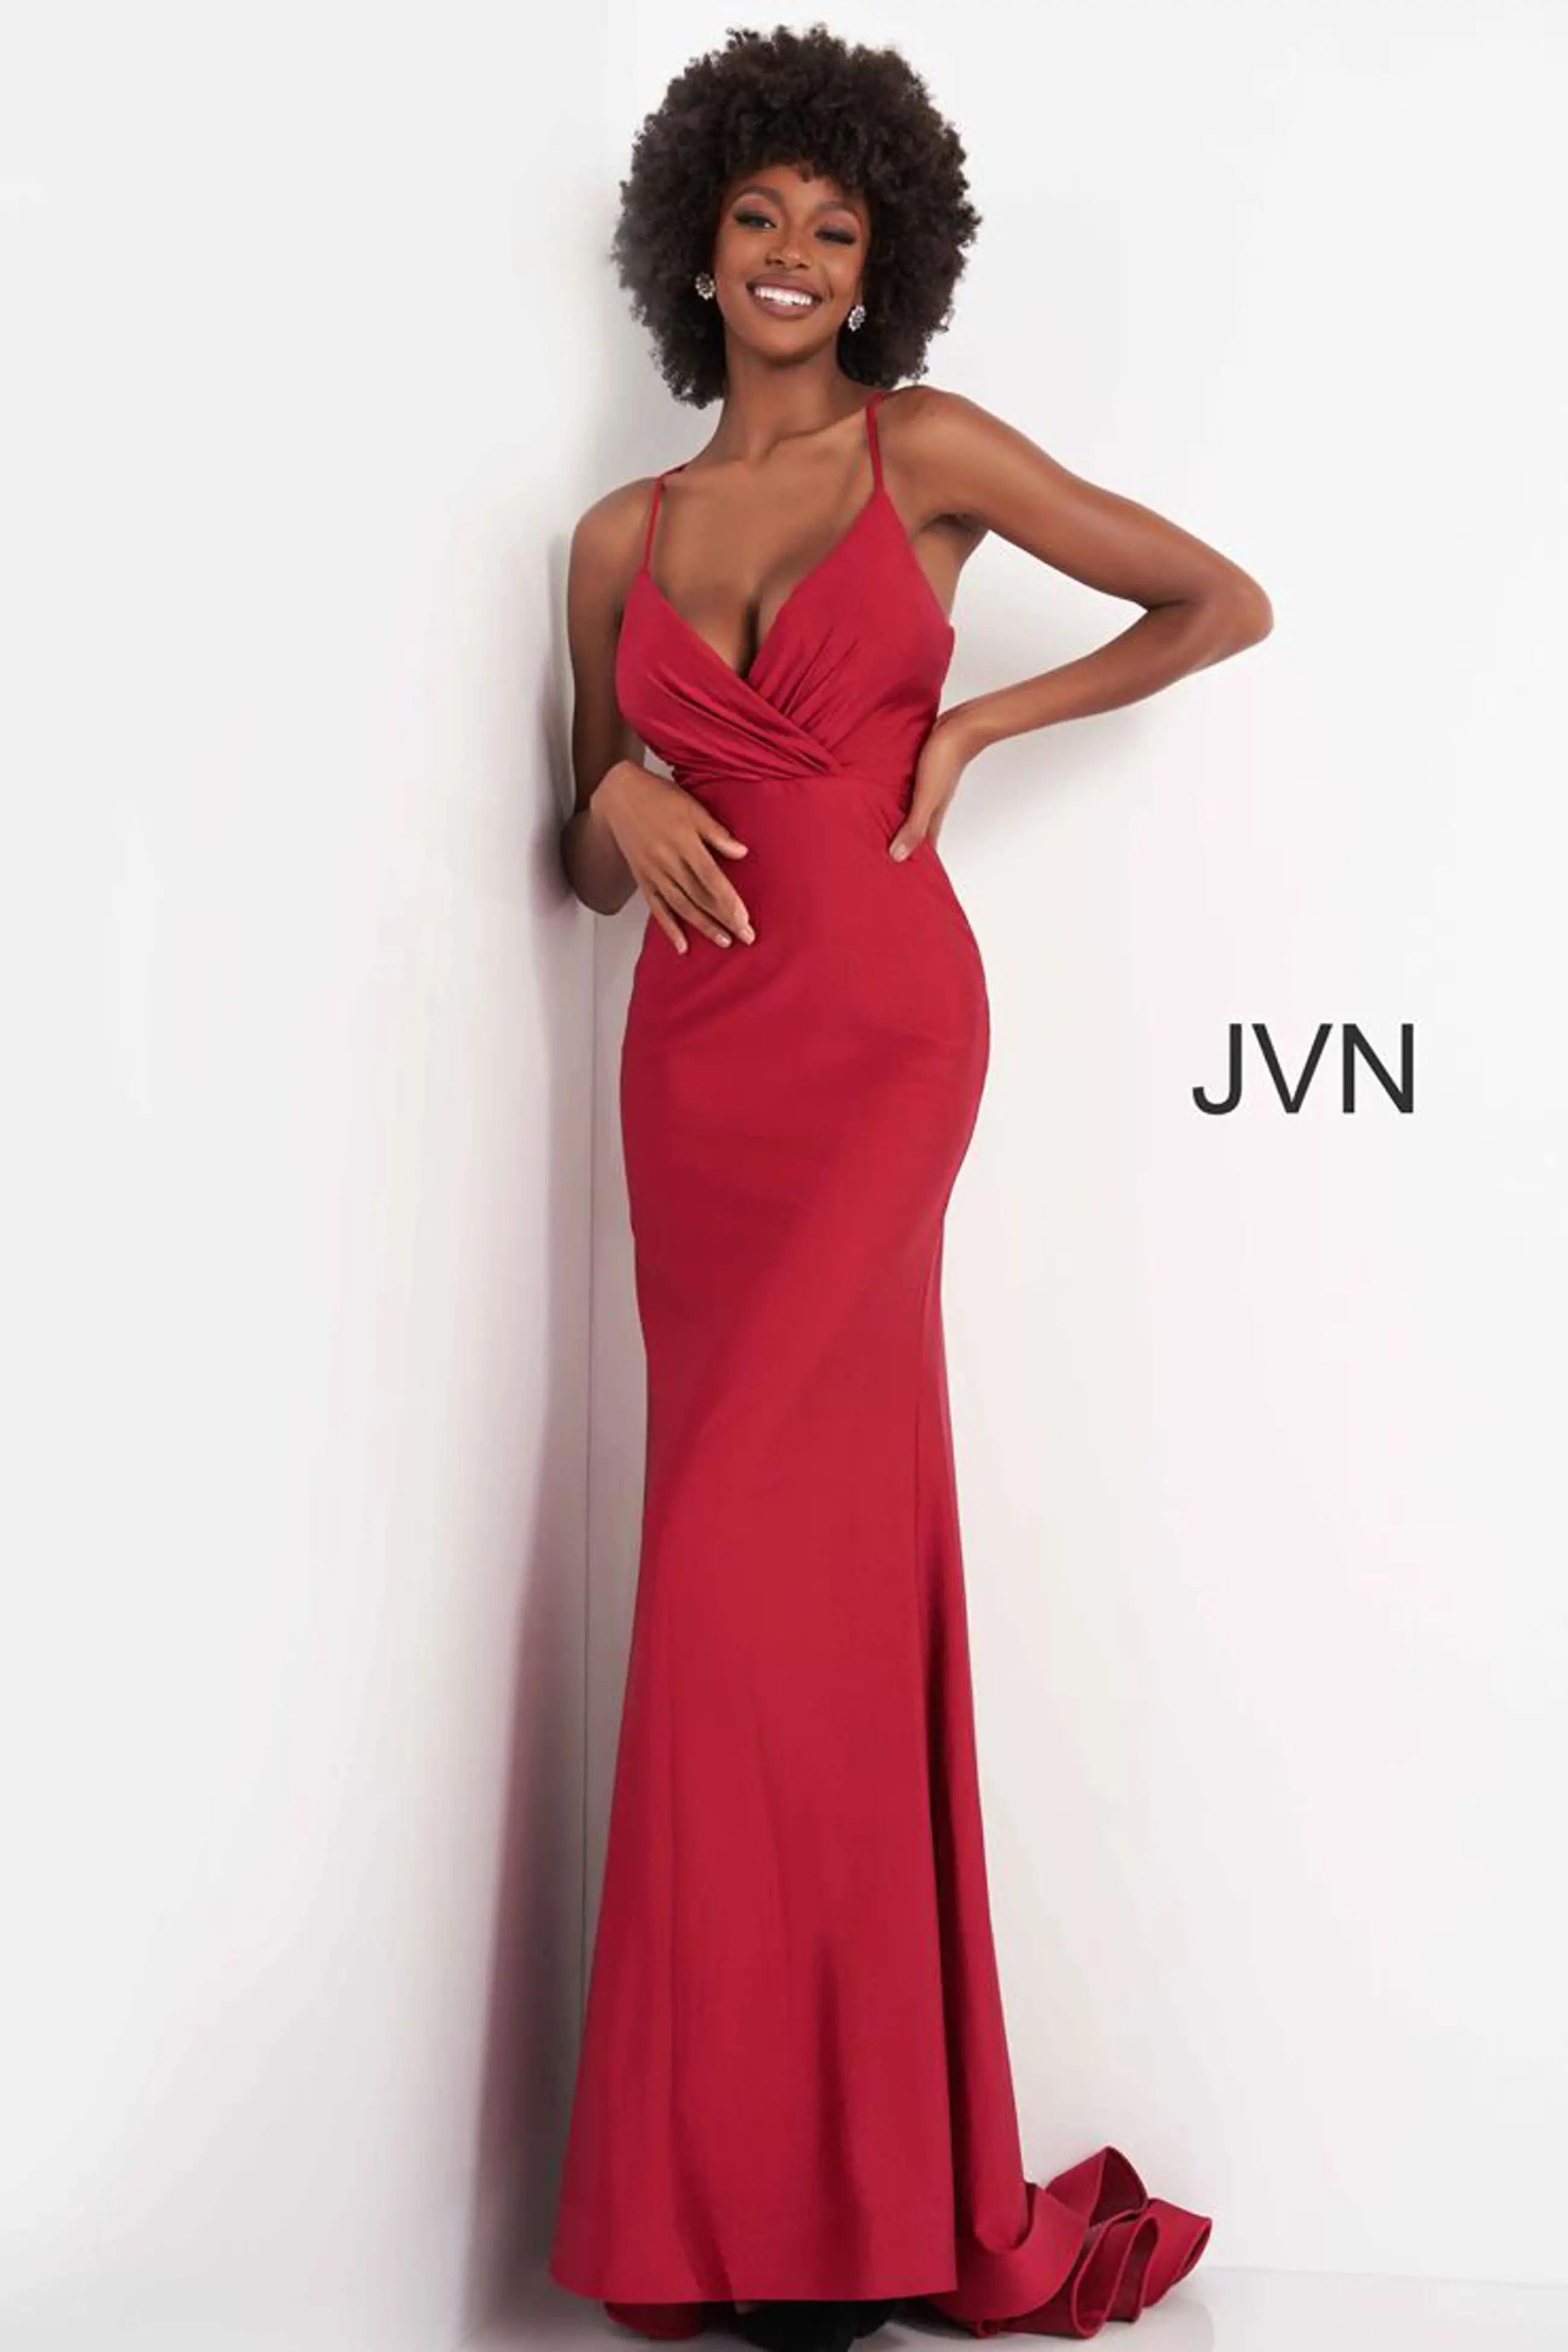 Model wearing a JVN gown